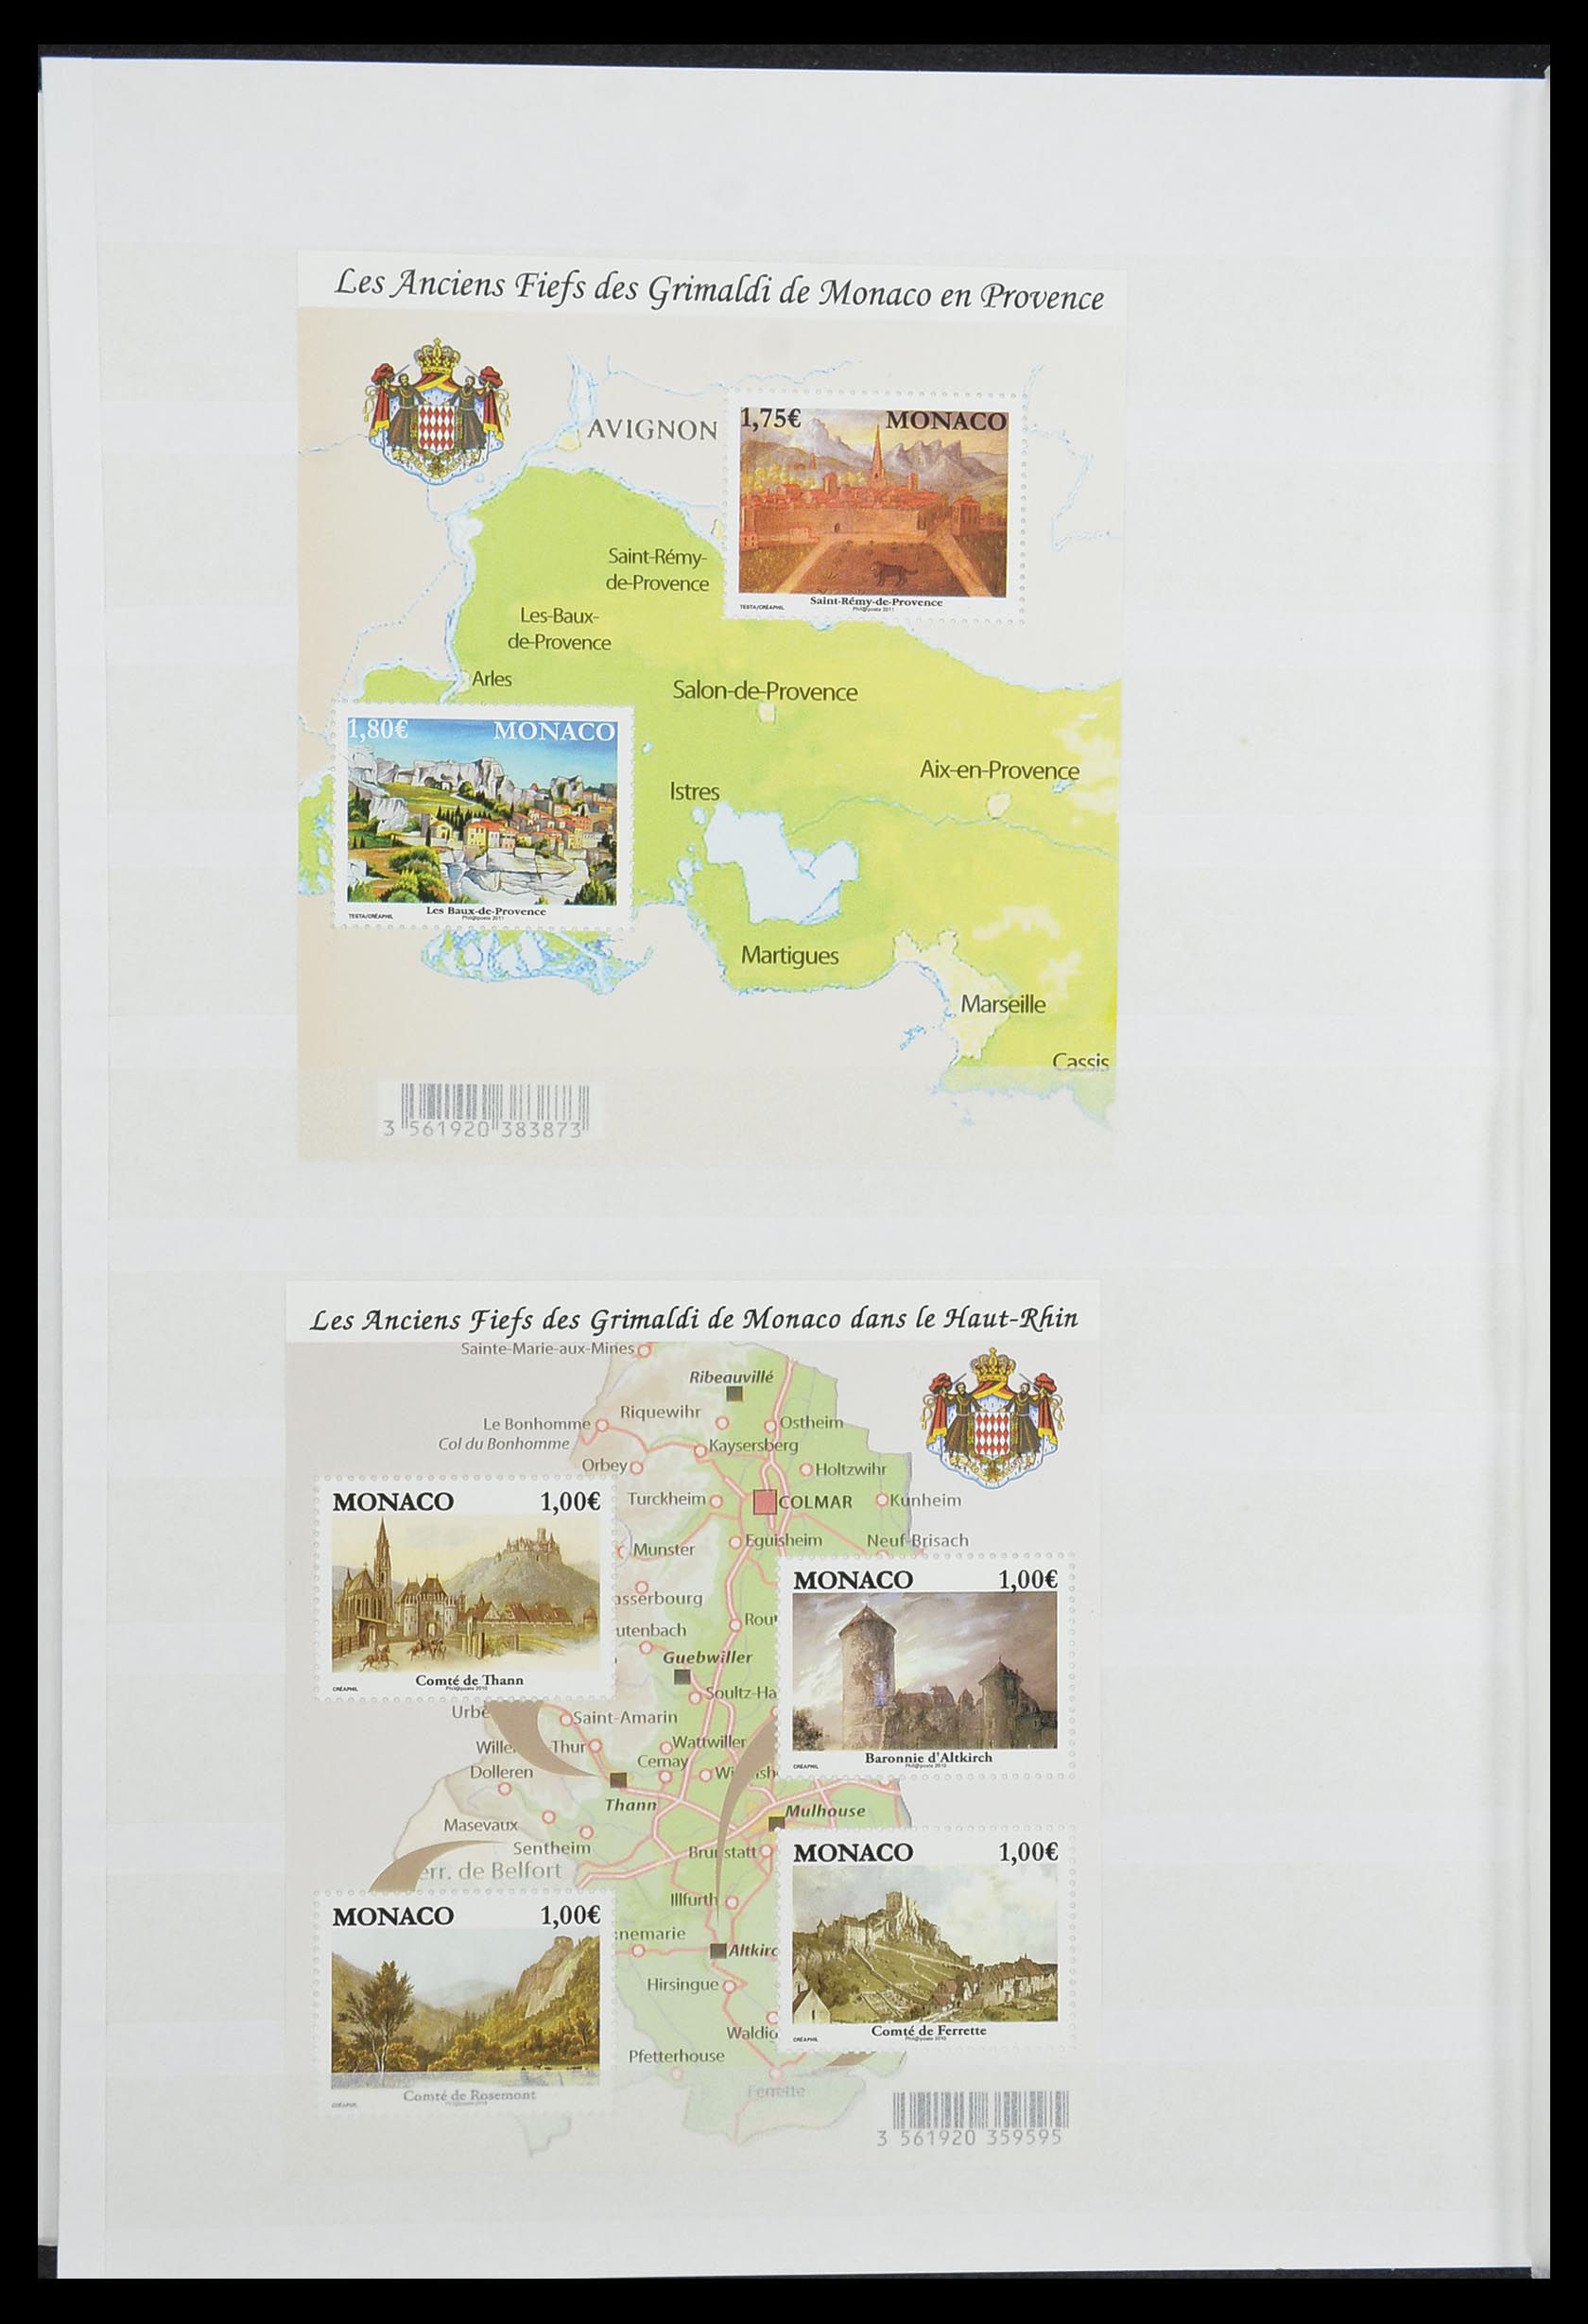 33833 055 - Stamp collection 33833 Monaco souvenir sheets 1979-2015.